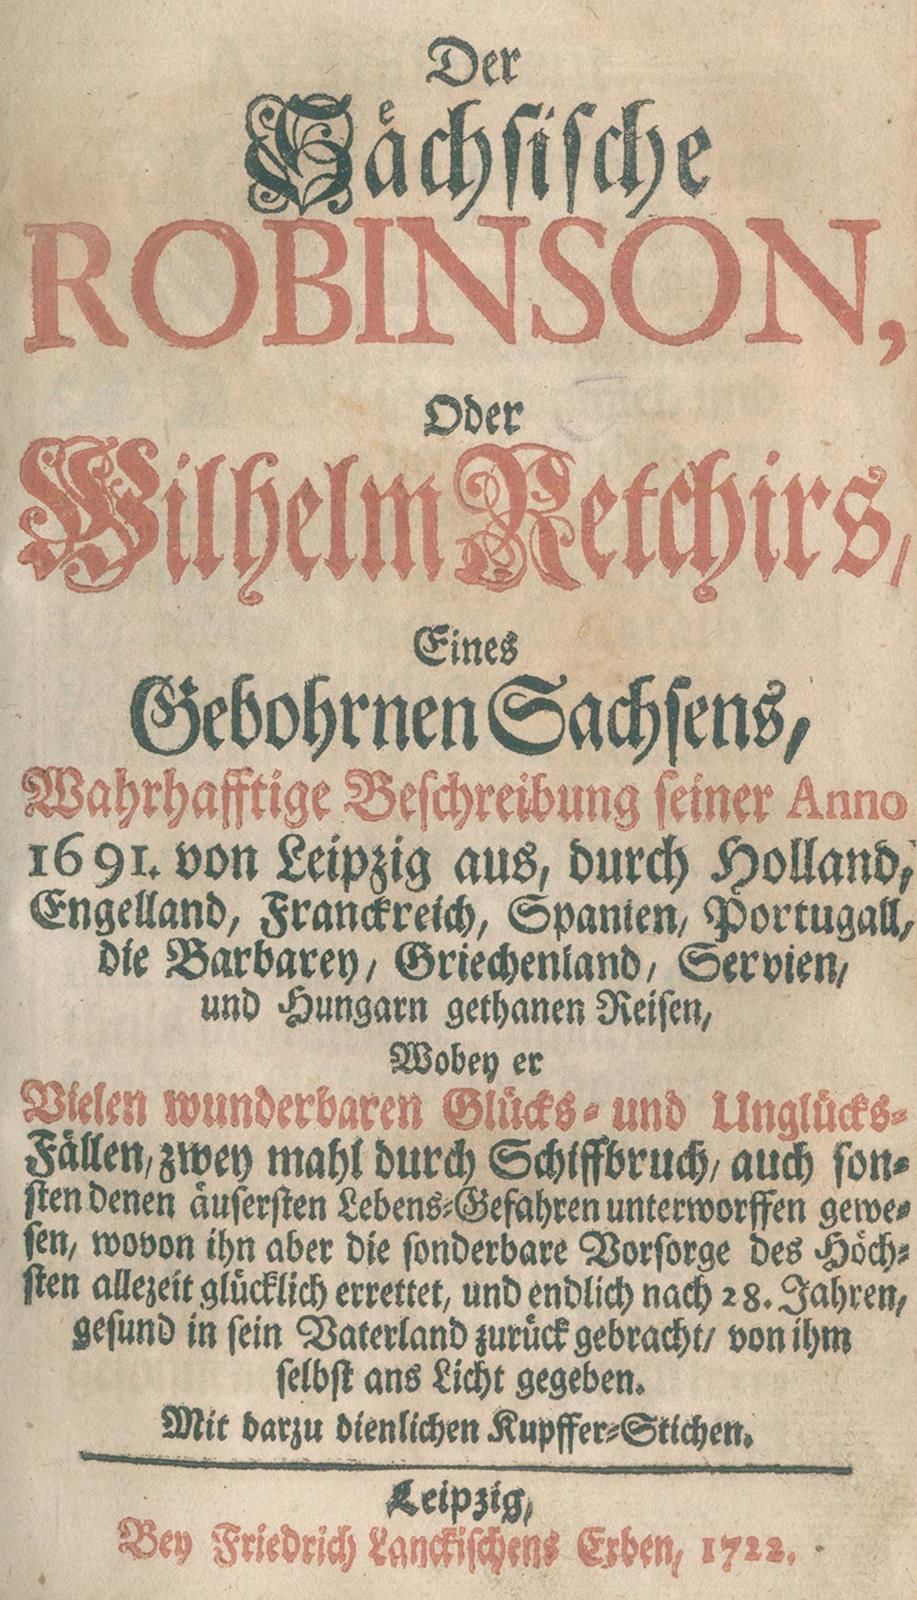 Sächsische Robinson, Der, 或威廉-雷奇尔（Wilhelm Retchir），一个出生在萨克森的人，真实描述了他1691年从莱比锡出发，&hellip;